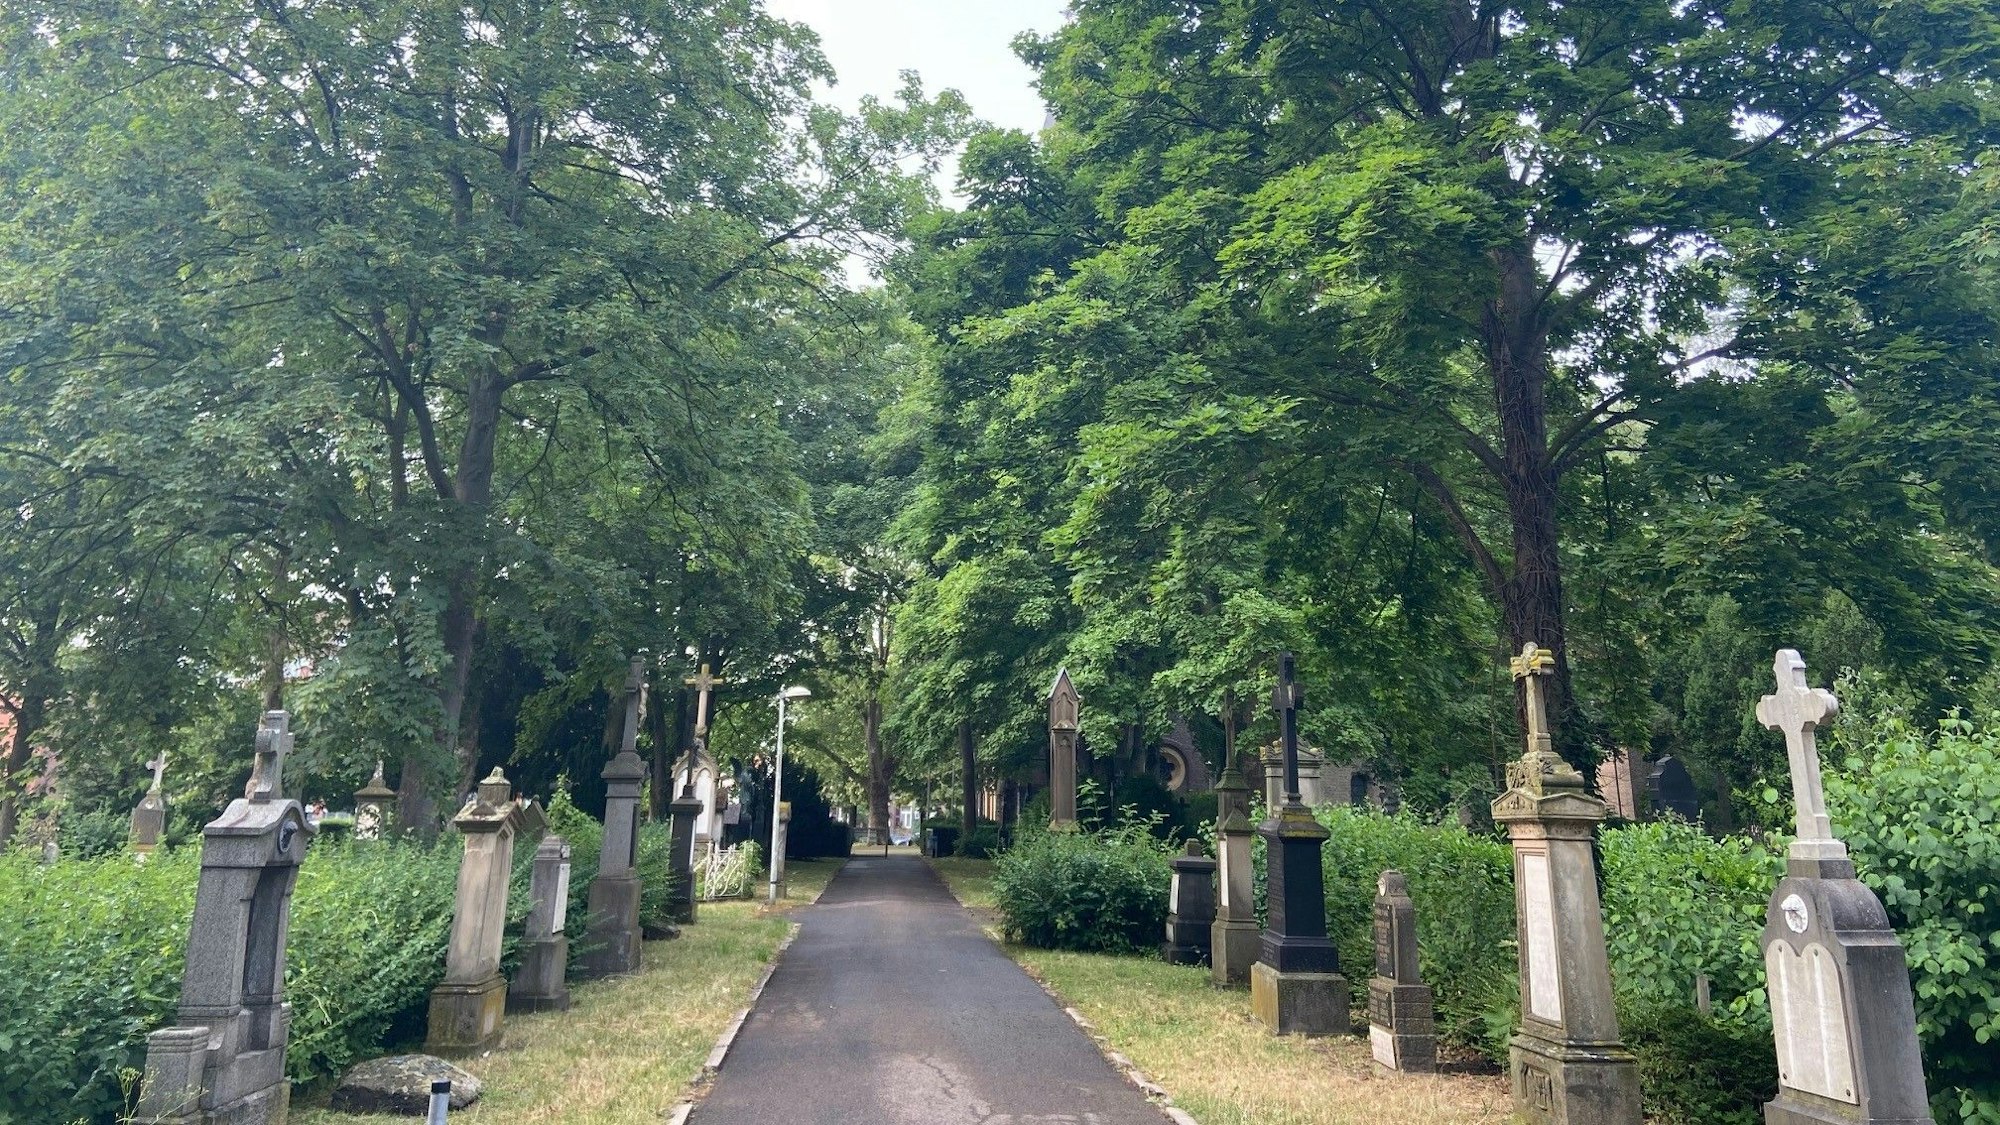 Auf dem Bild ist ein alter Friedhof zu sehen.